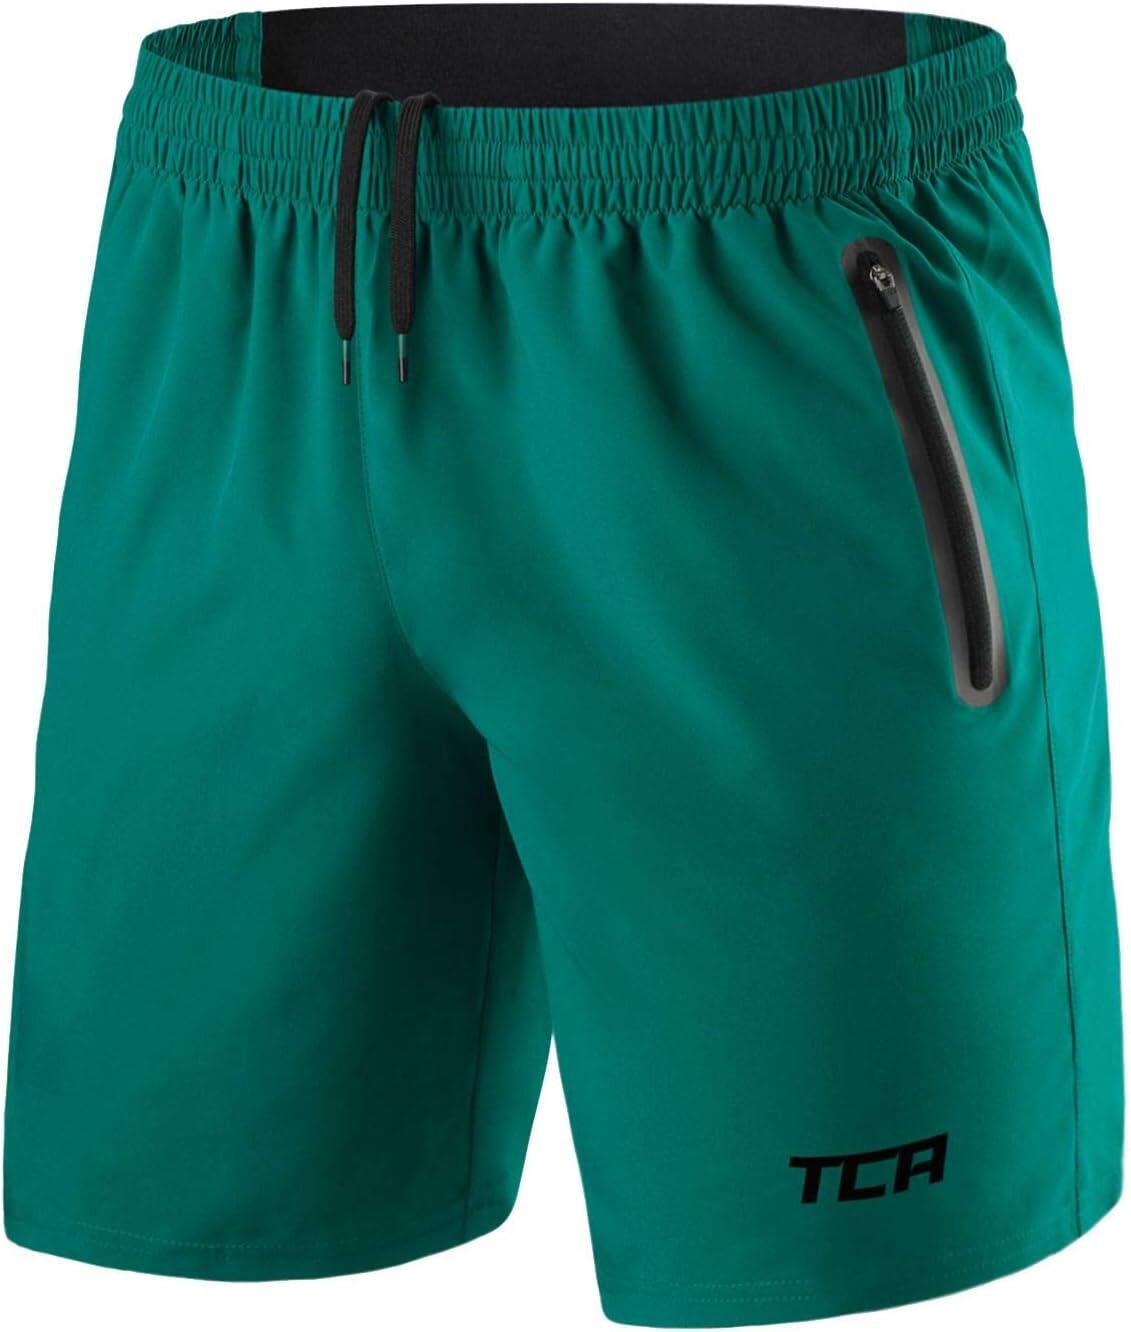 TCA Men's Elite Tech Lightweight Running Shorts with Zip Pockets - Viridian